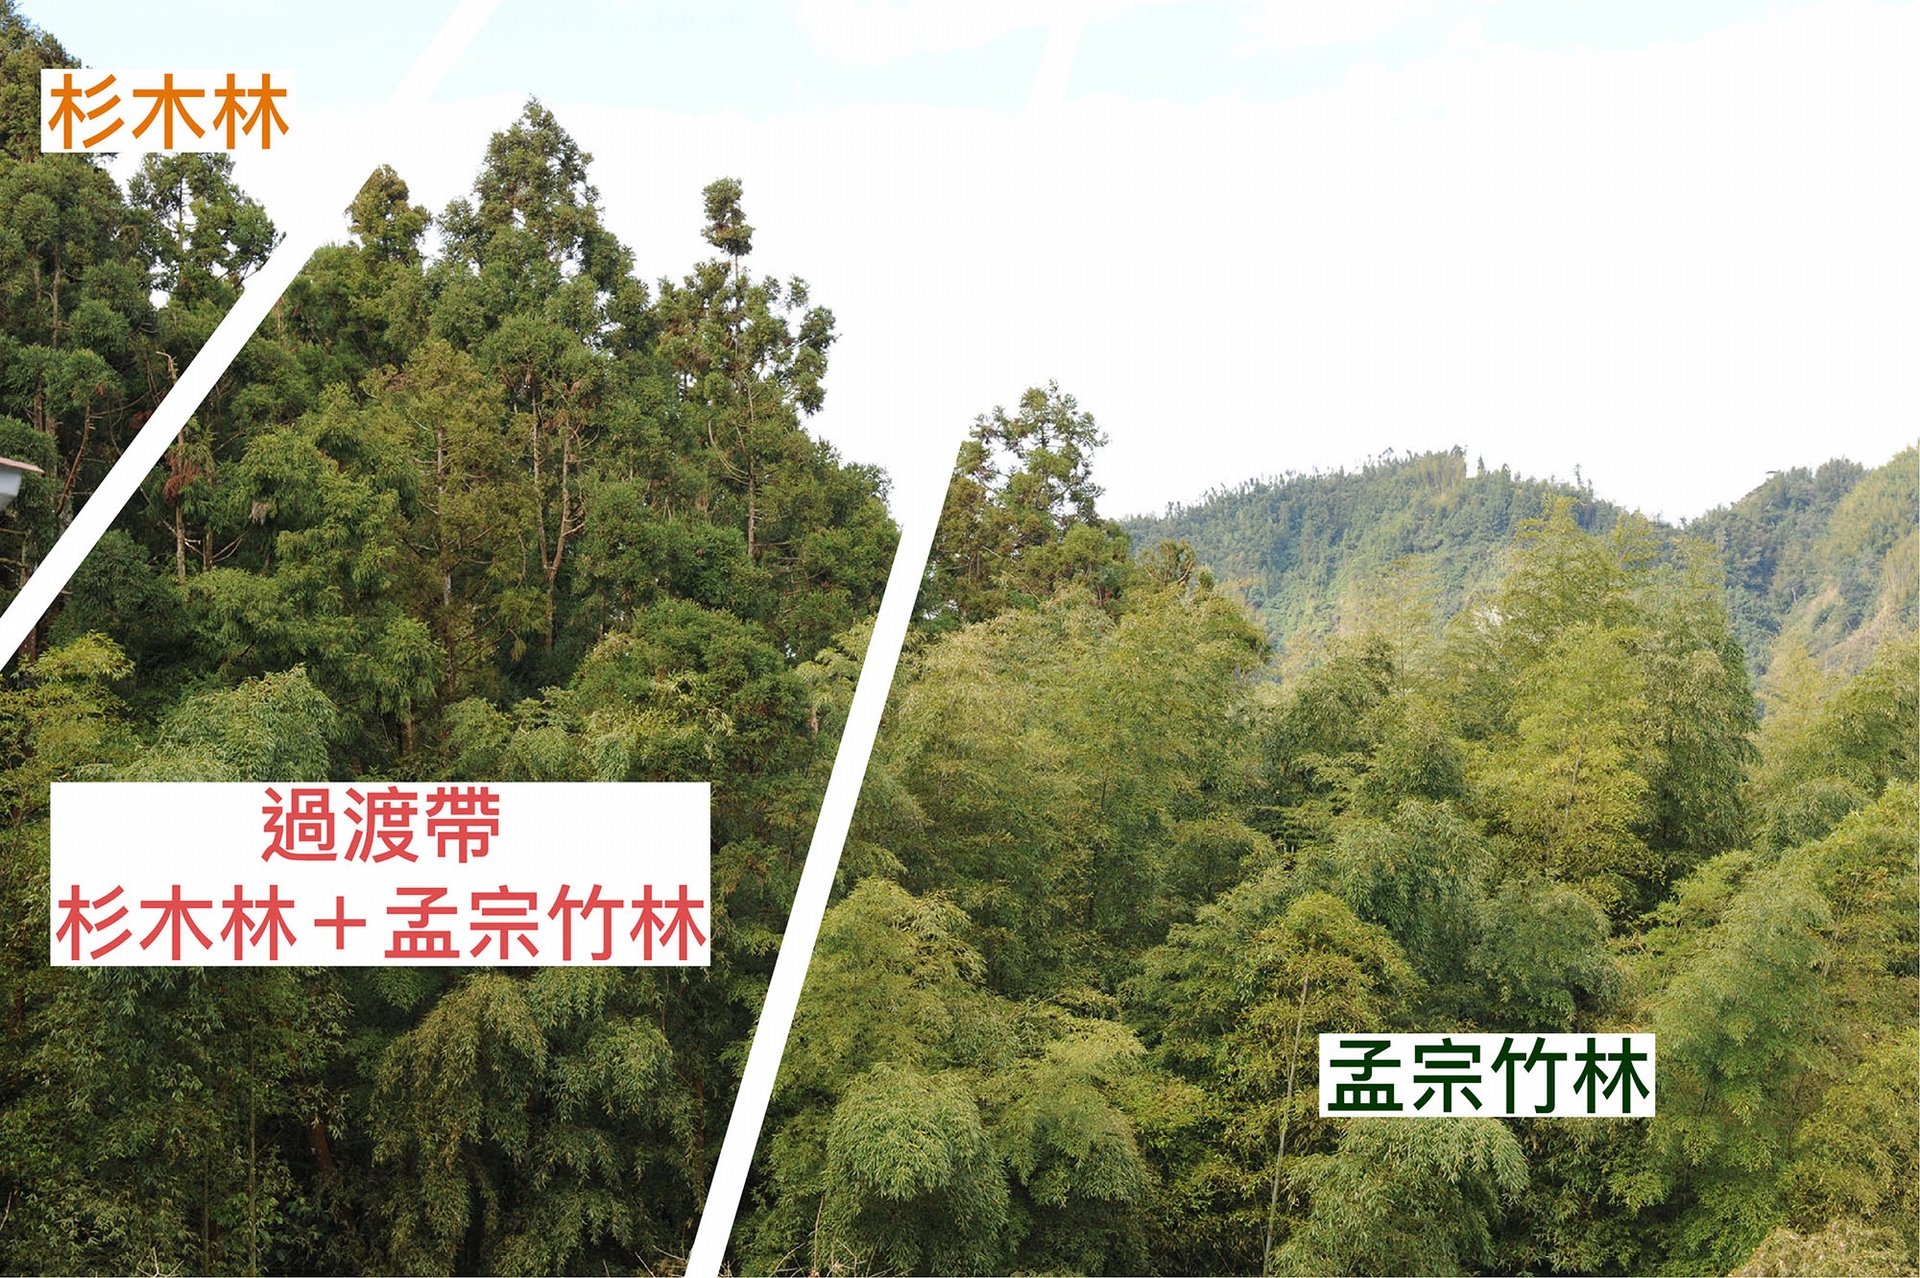 孟宗竹林侵入鄰近的杉木或闊葉林，是臺灣山區常見的景象。資料來源│邱志郁（溪頭羊彎） 圖說重製│廖英凱、張語辰 